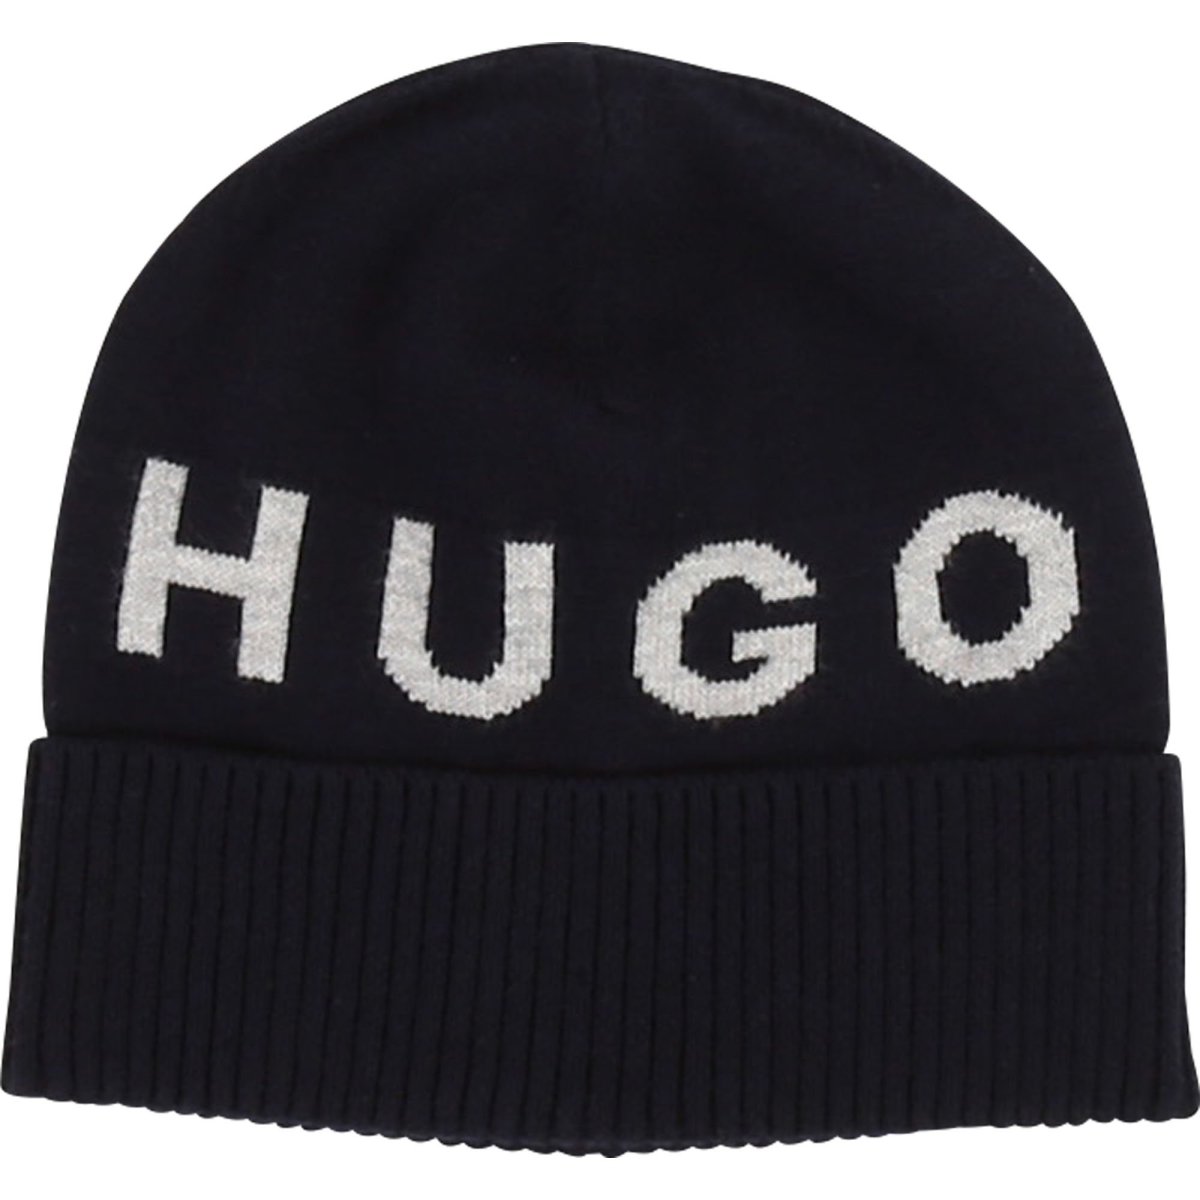 http://northboys.ca/cdn/shop/products/hugo-boss-baby-pull-on-hat-192-j01100-hats-hugo-boss-392061.jpg?v=1608104096